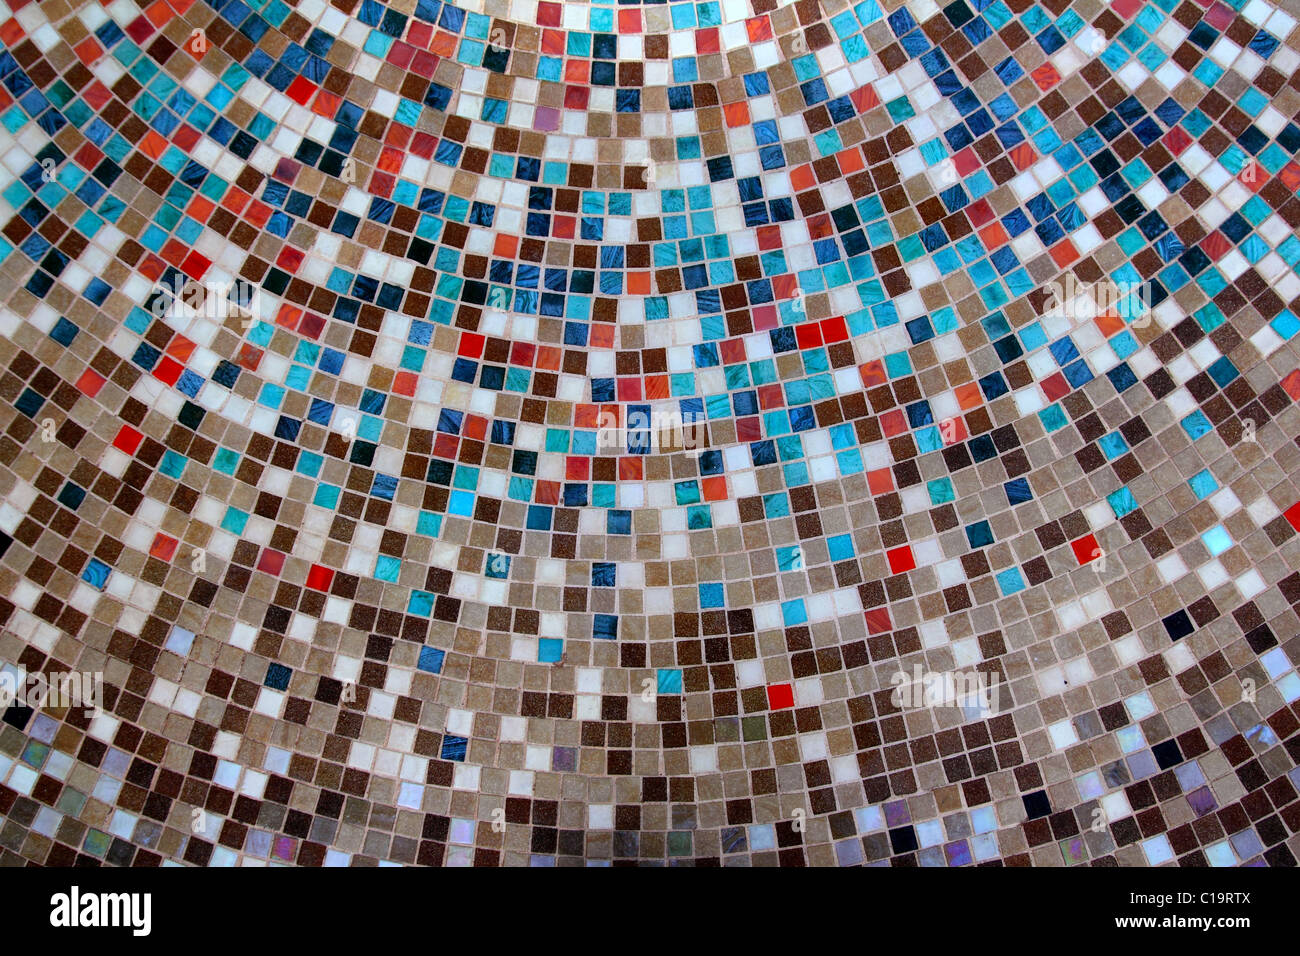 Verre céramique carreaux colorés cercle mosaïque motif composition Banque D'Images